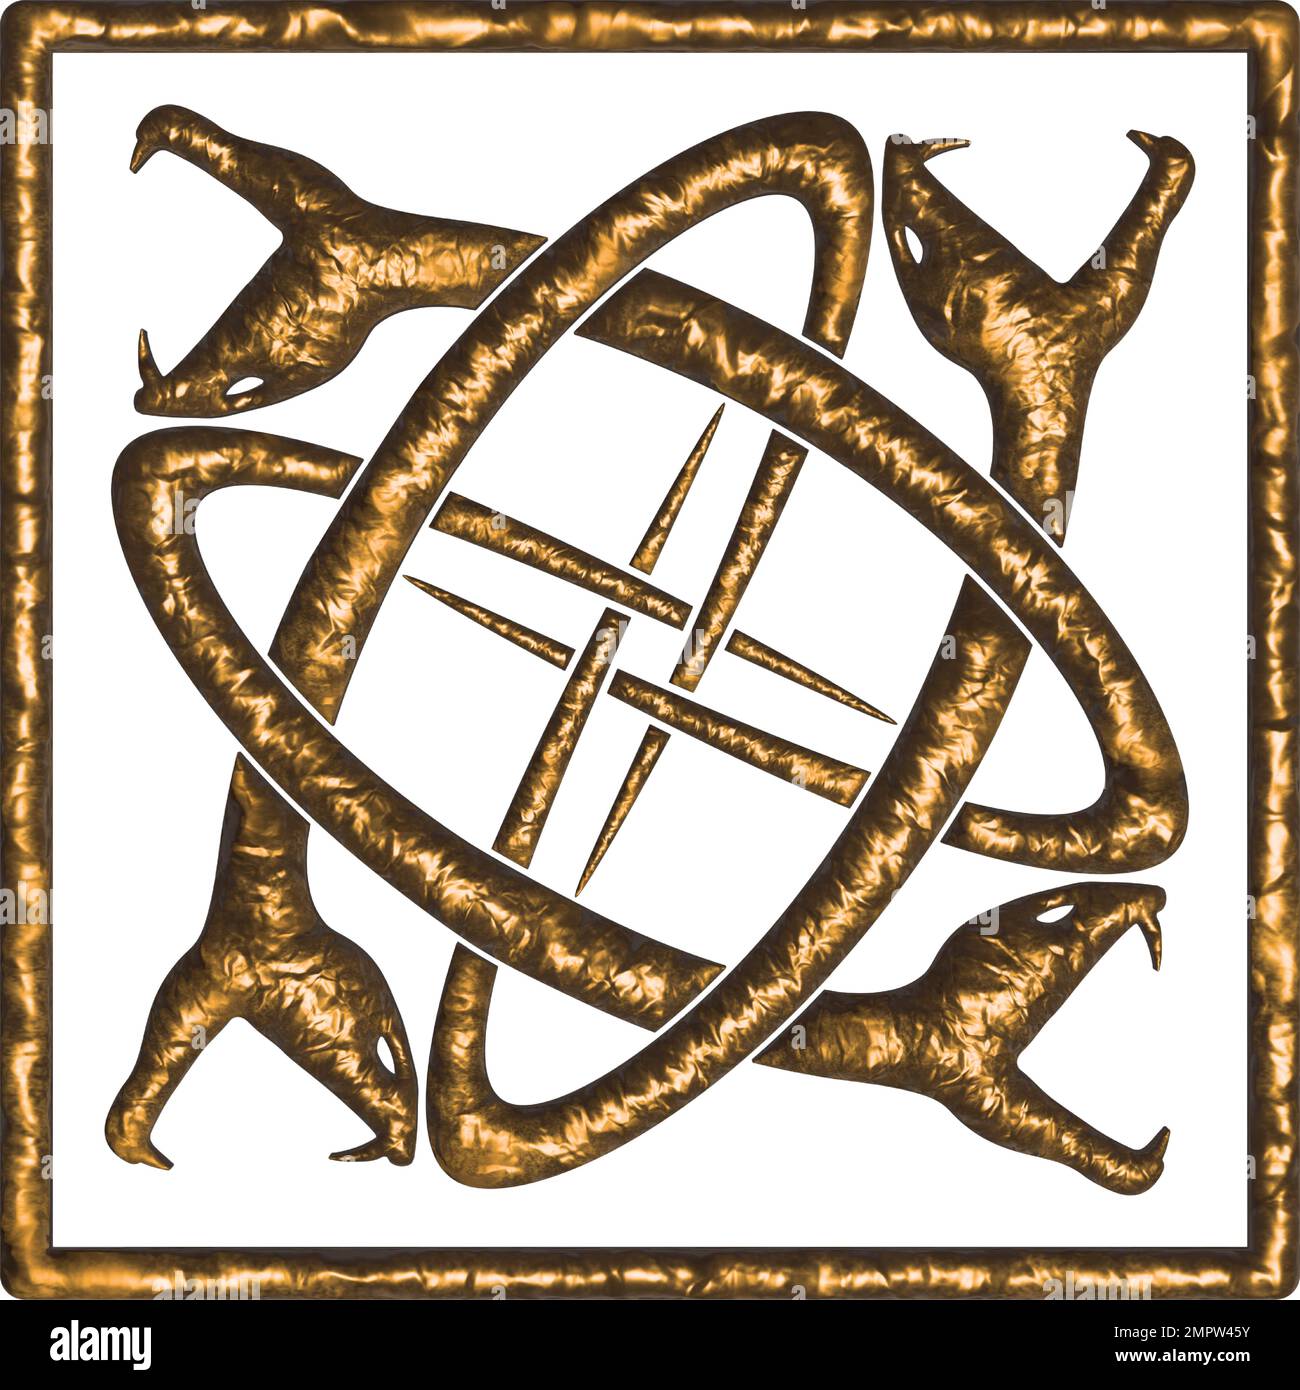 Quatre serpents entrelacés enfermés dans un carré - or sur blanc Illustration de Vecteur